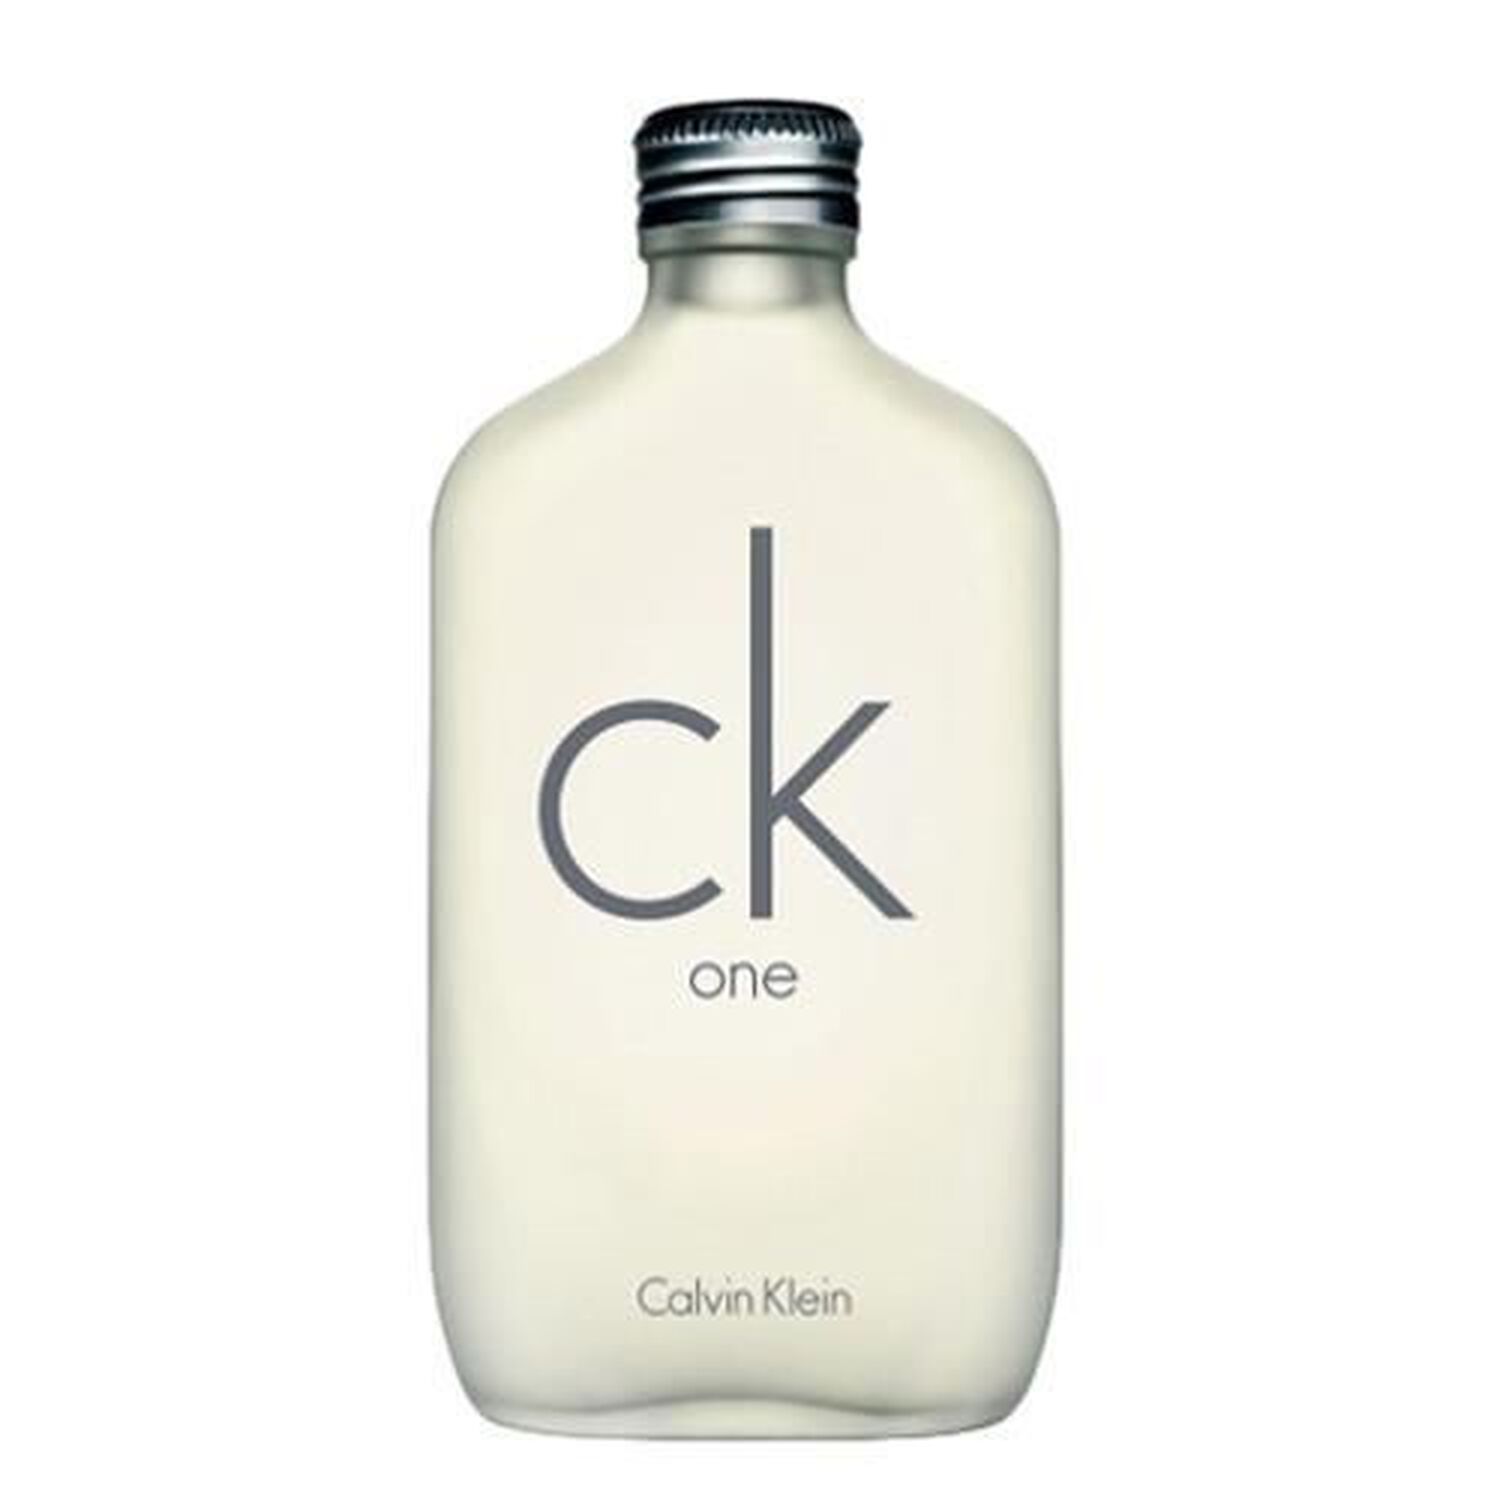 CK One, Eau de Toilette - Calvin Klein